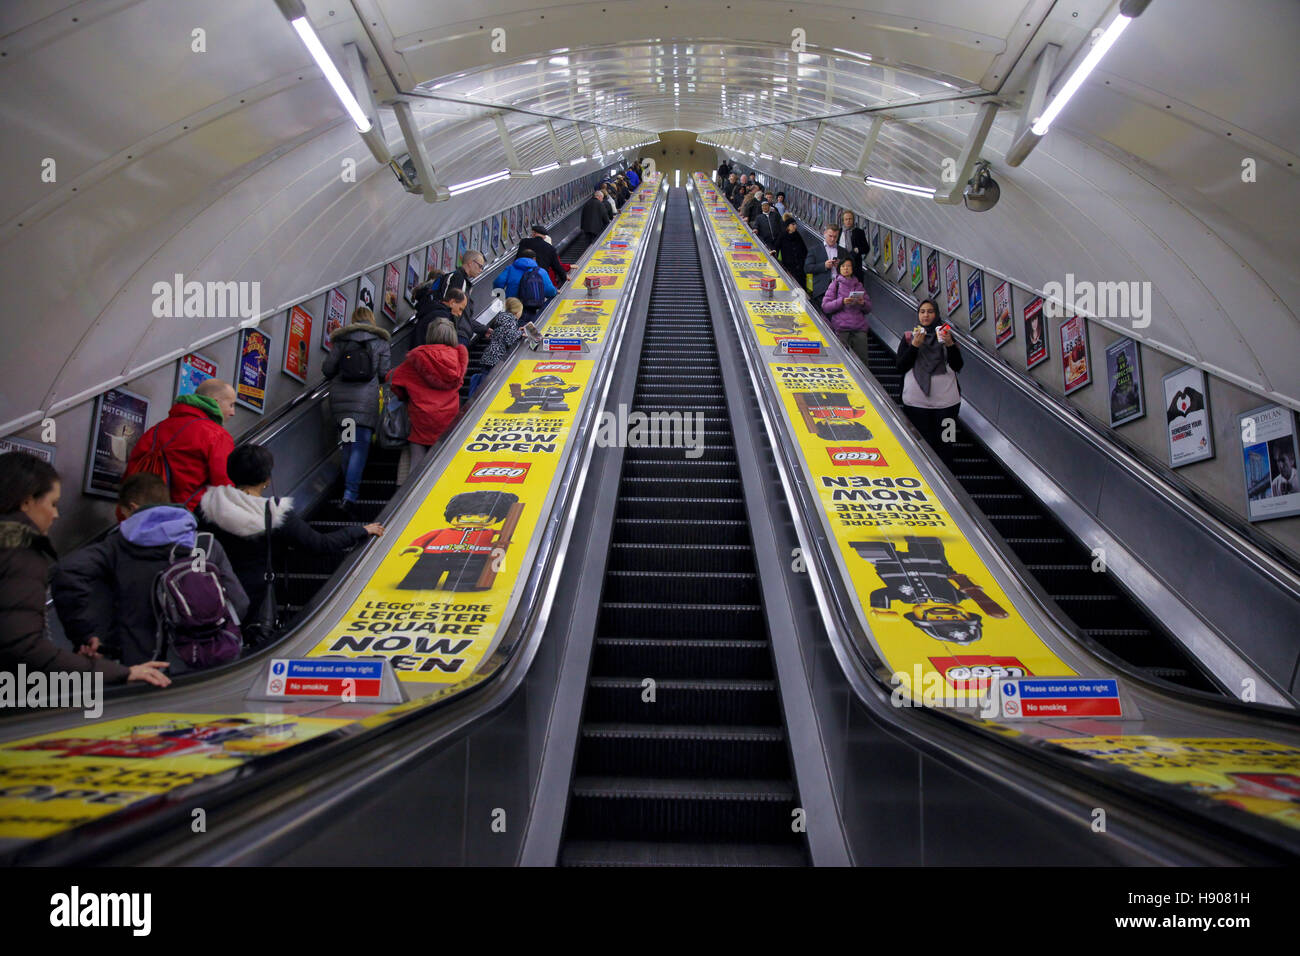 Leicester Square, Londra, Regno Unito. 17 Nov, 2016. LEGO adesivi su scale  mobili della metropolitana a Leicester Square. Sindaco di Londra, Sadiq  Khan si unisce a John Goodwin, Chief Financial Officer di